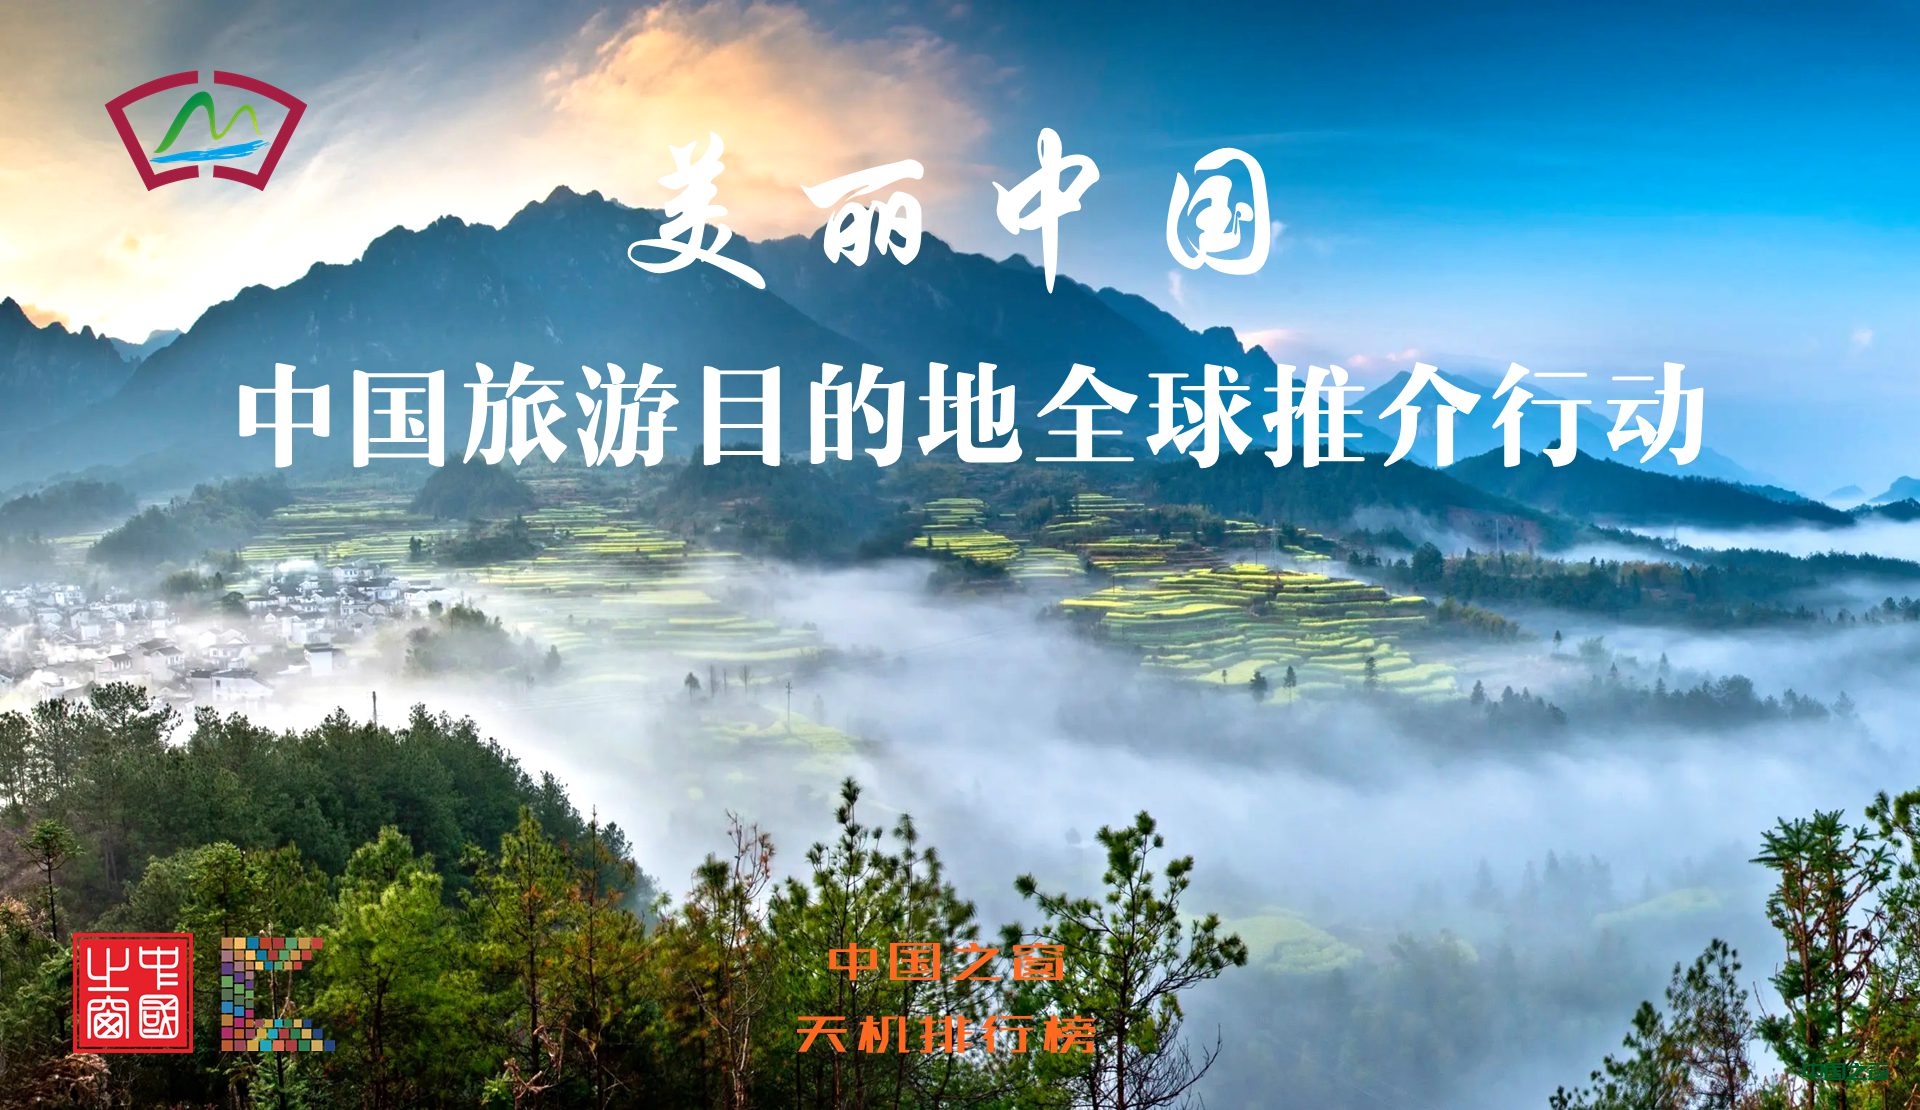 中国之窗联合天机排行榜开展“美丽中国-中国旅游目的地全球推介行动”